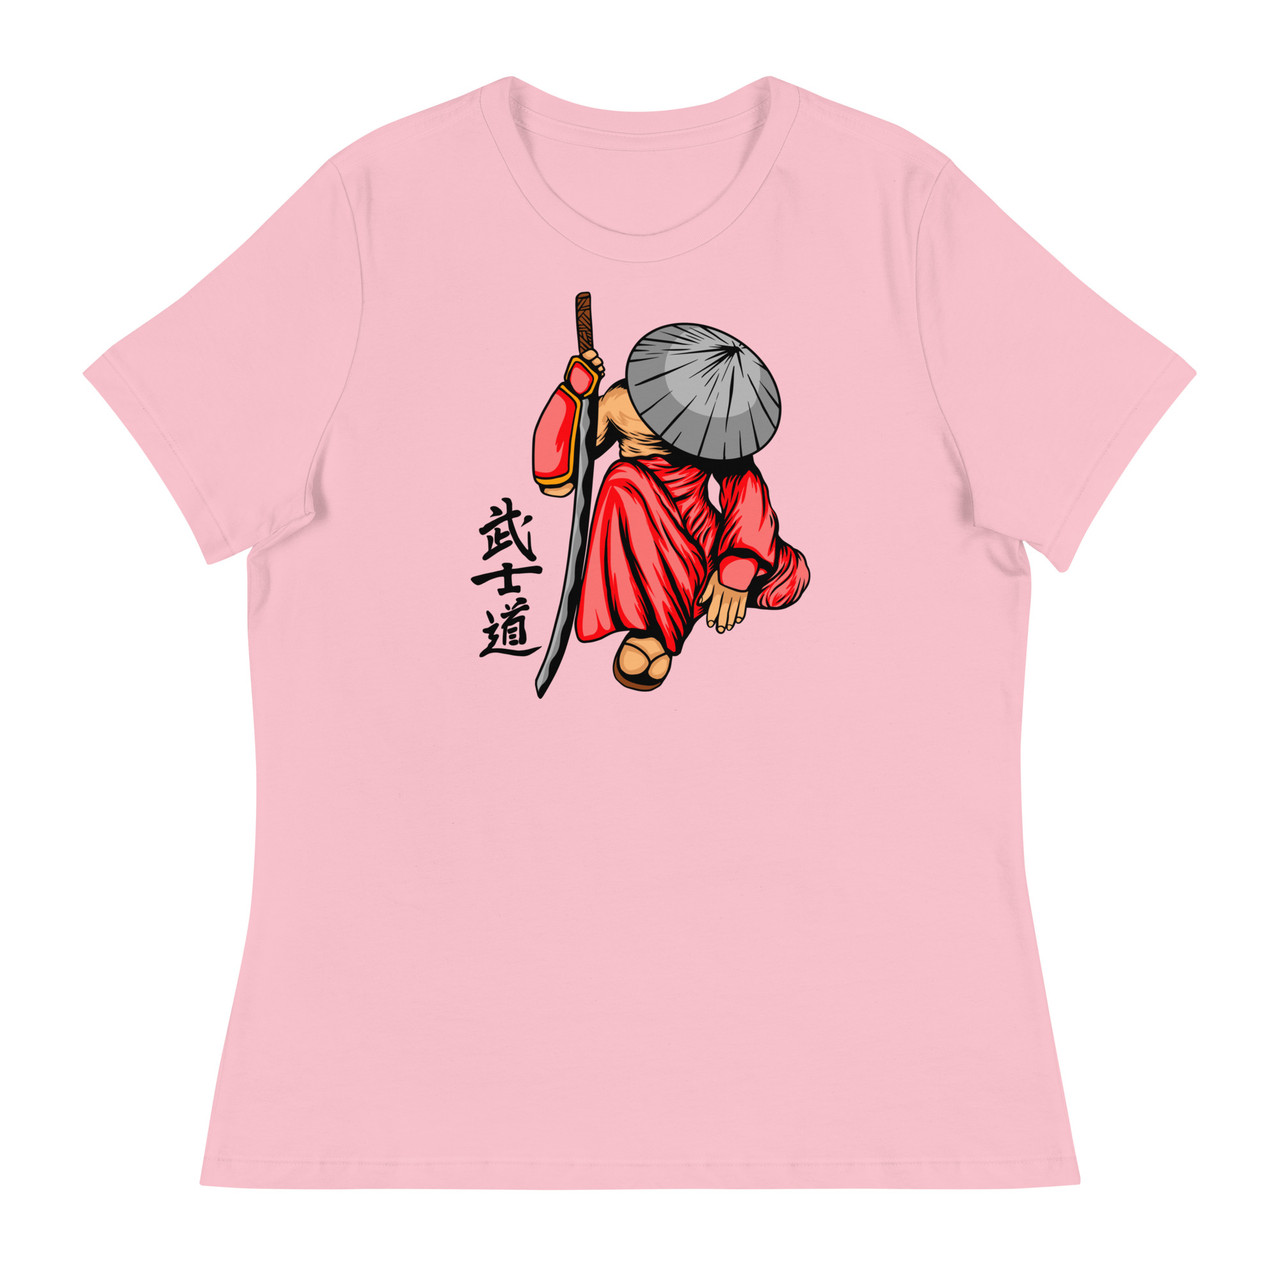 Samurai 18 Women's Relaxed T-Shirt - Bella + Canvas 6400 